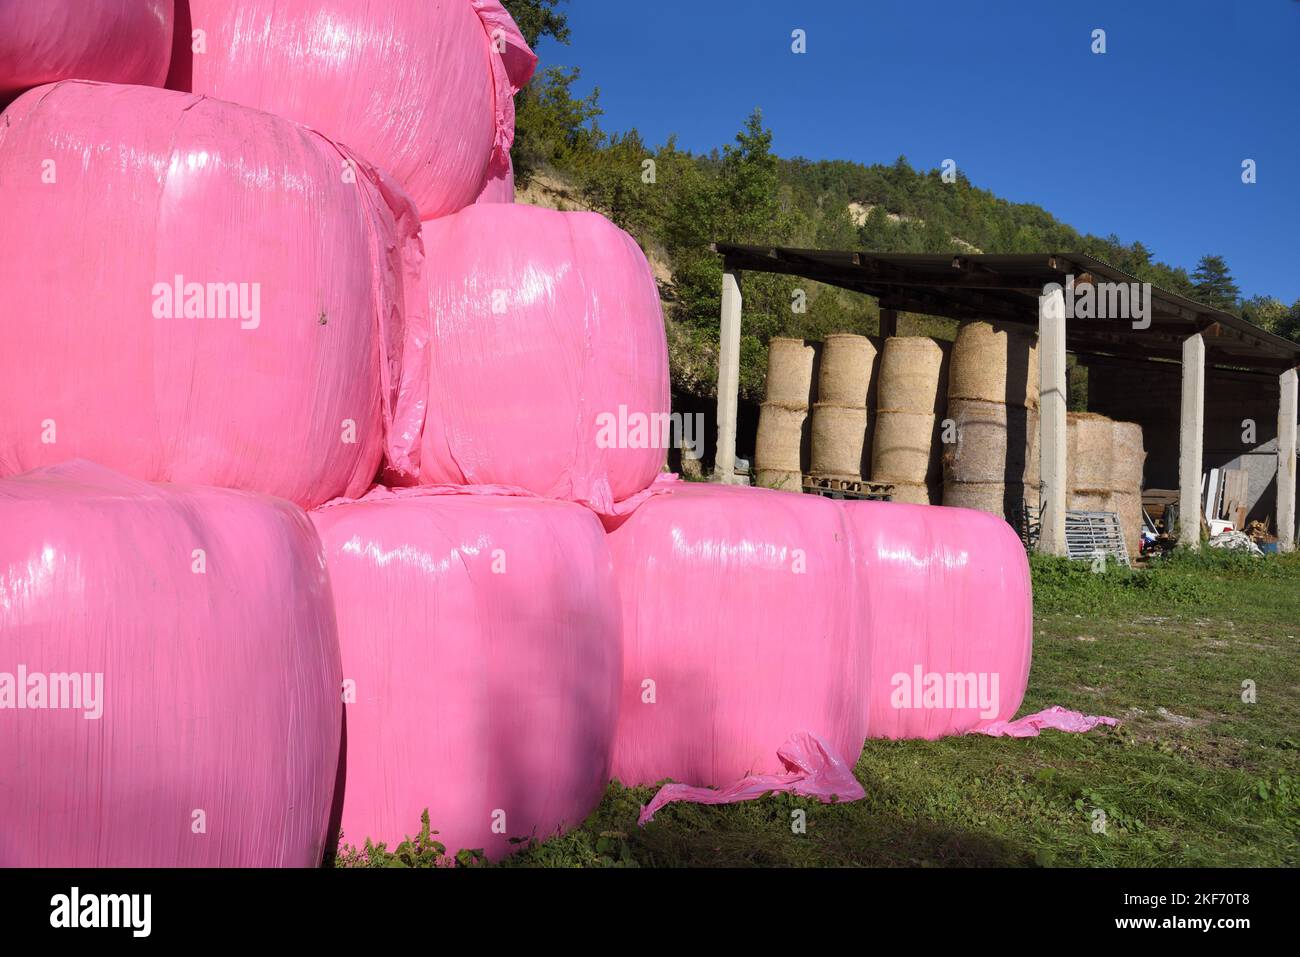 Balles de foin rose ou balles de paille couvertes de plastique rose choquant ou de polyéthylène et de foin Barn sur ferme dans les Alpes-de-haute-Provence France Banque D'Images